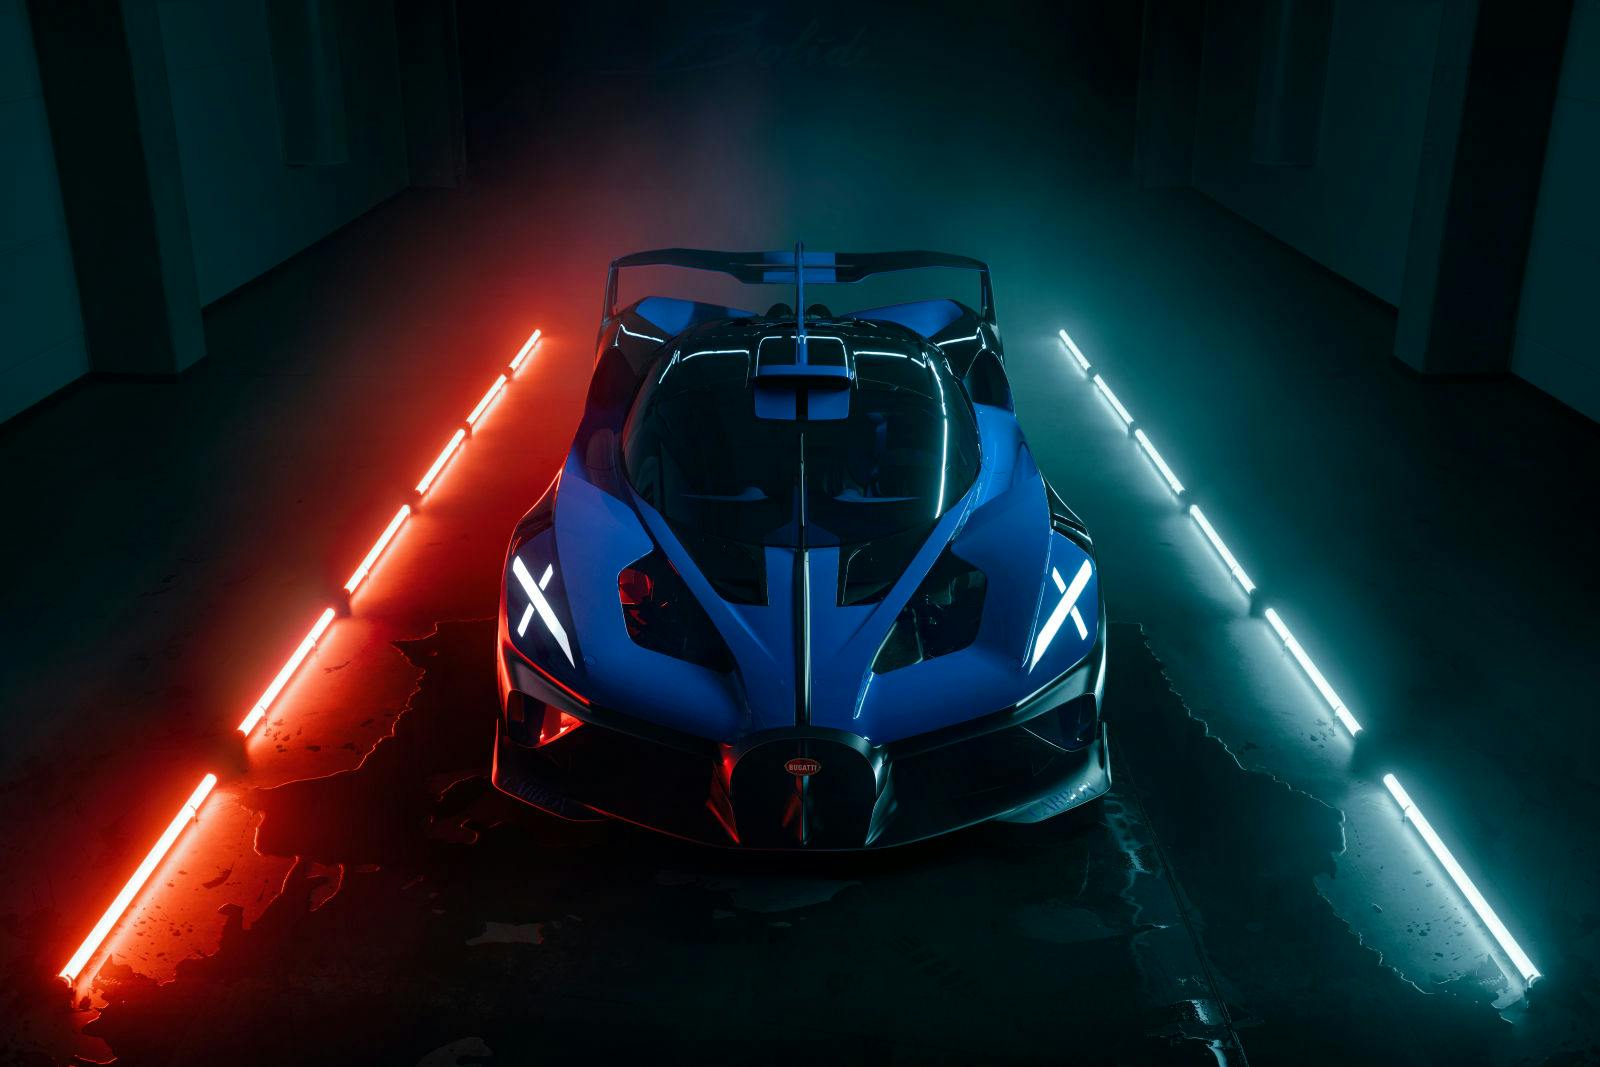 Le Bolide de Bugatti a reçu le Grand Prix de la plus belle hypercar de l’année 2020 au « Festival Automobile International », à Paris. © Philipp Rupprecht for TopGear.com